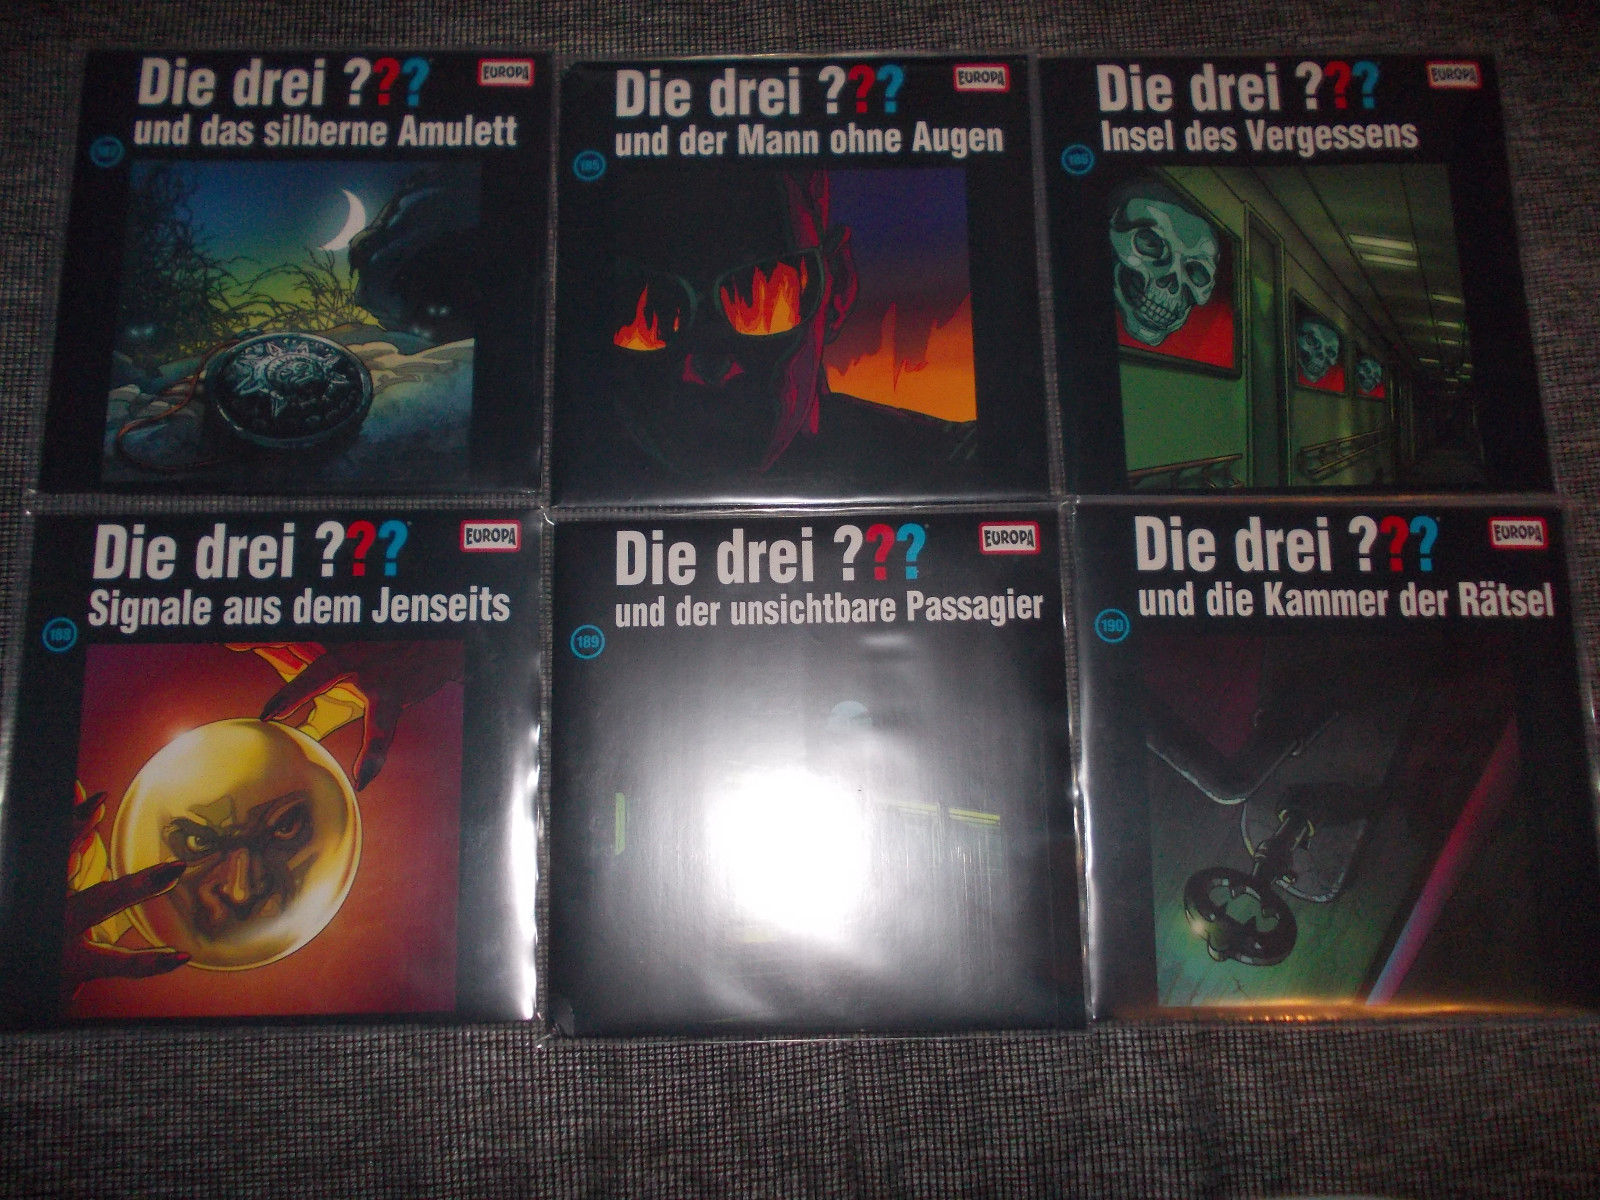 Die Drei ??? Fragezeichen Hörspiel LP Vinyl Sammlung 6 x Doppel LP Neu !! OVP